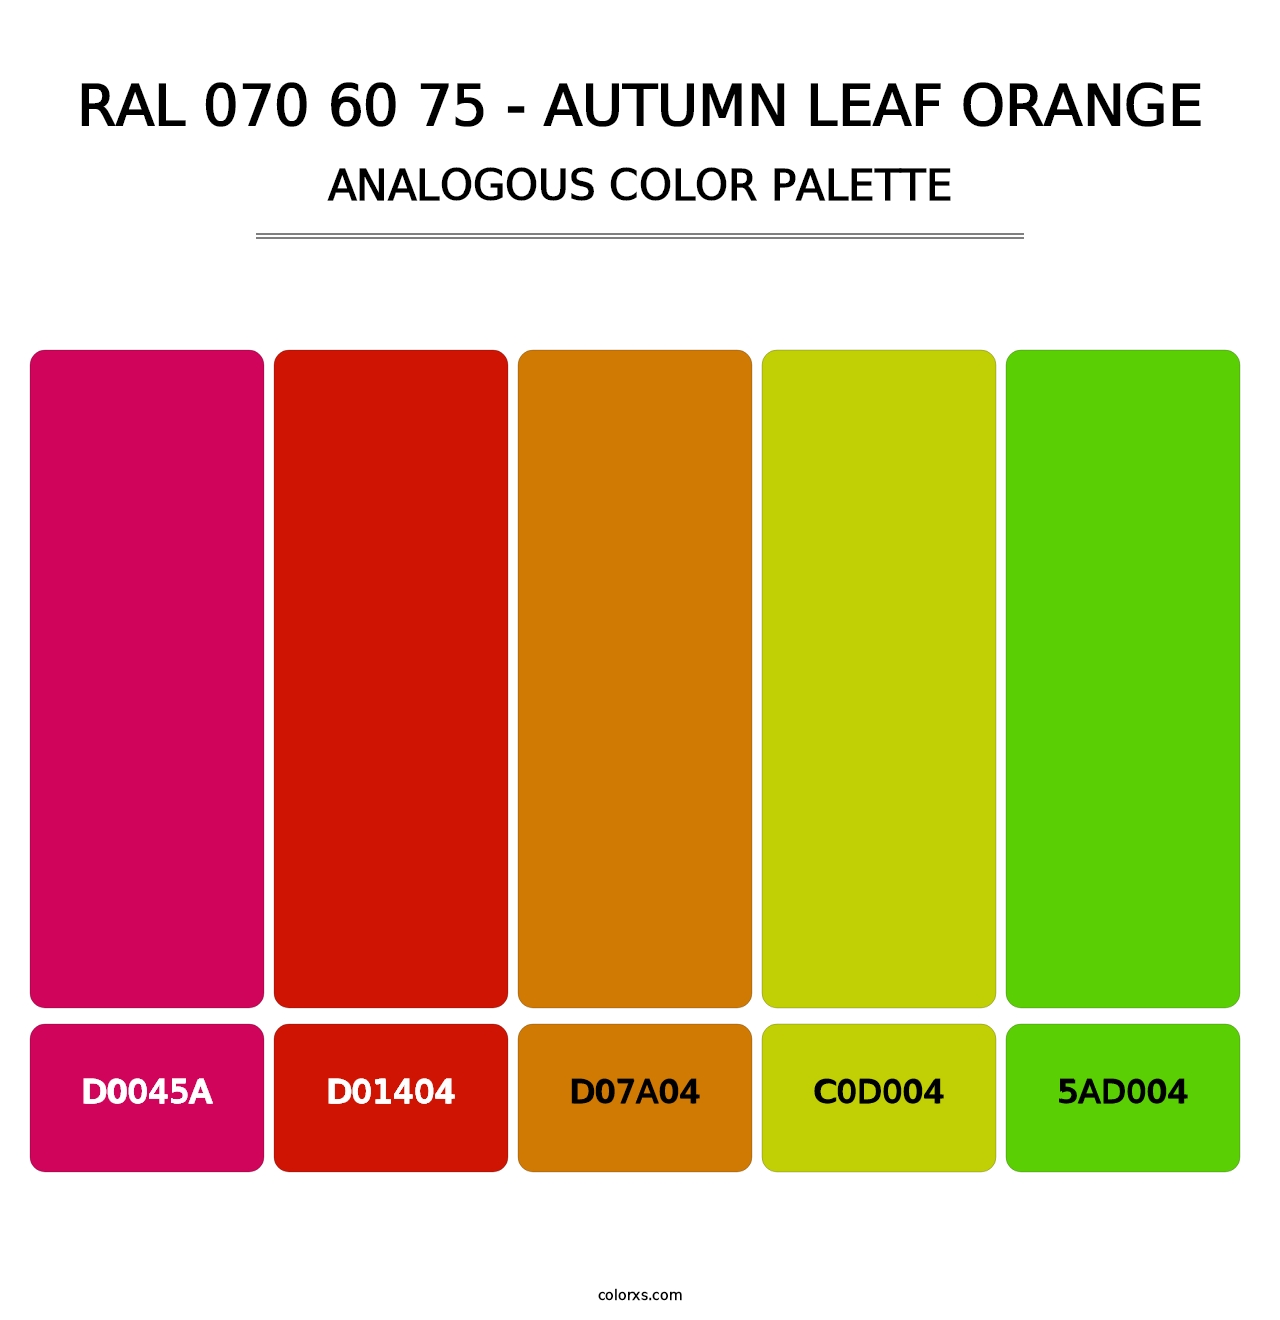 RAL 070 60 75 - Autumn Leaf Orange - Analogous Color Palette